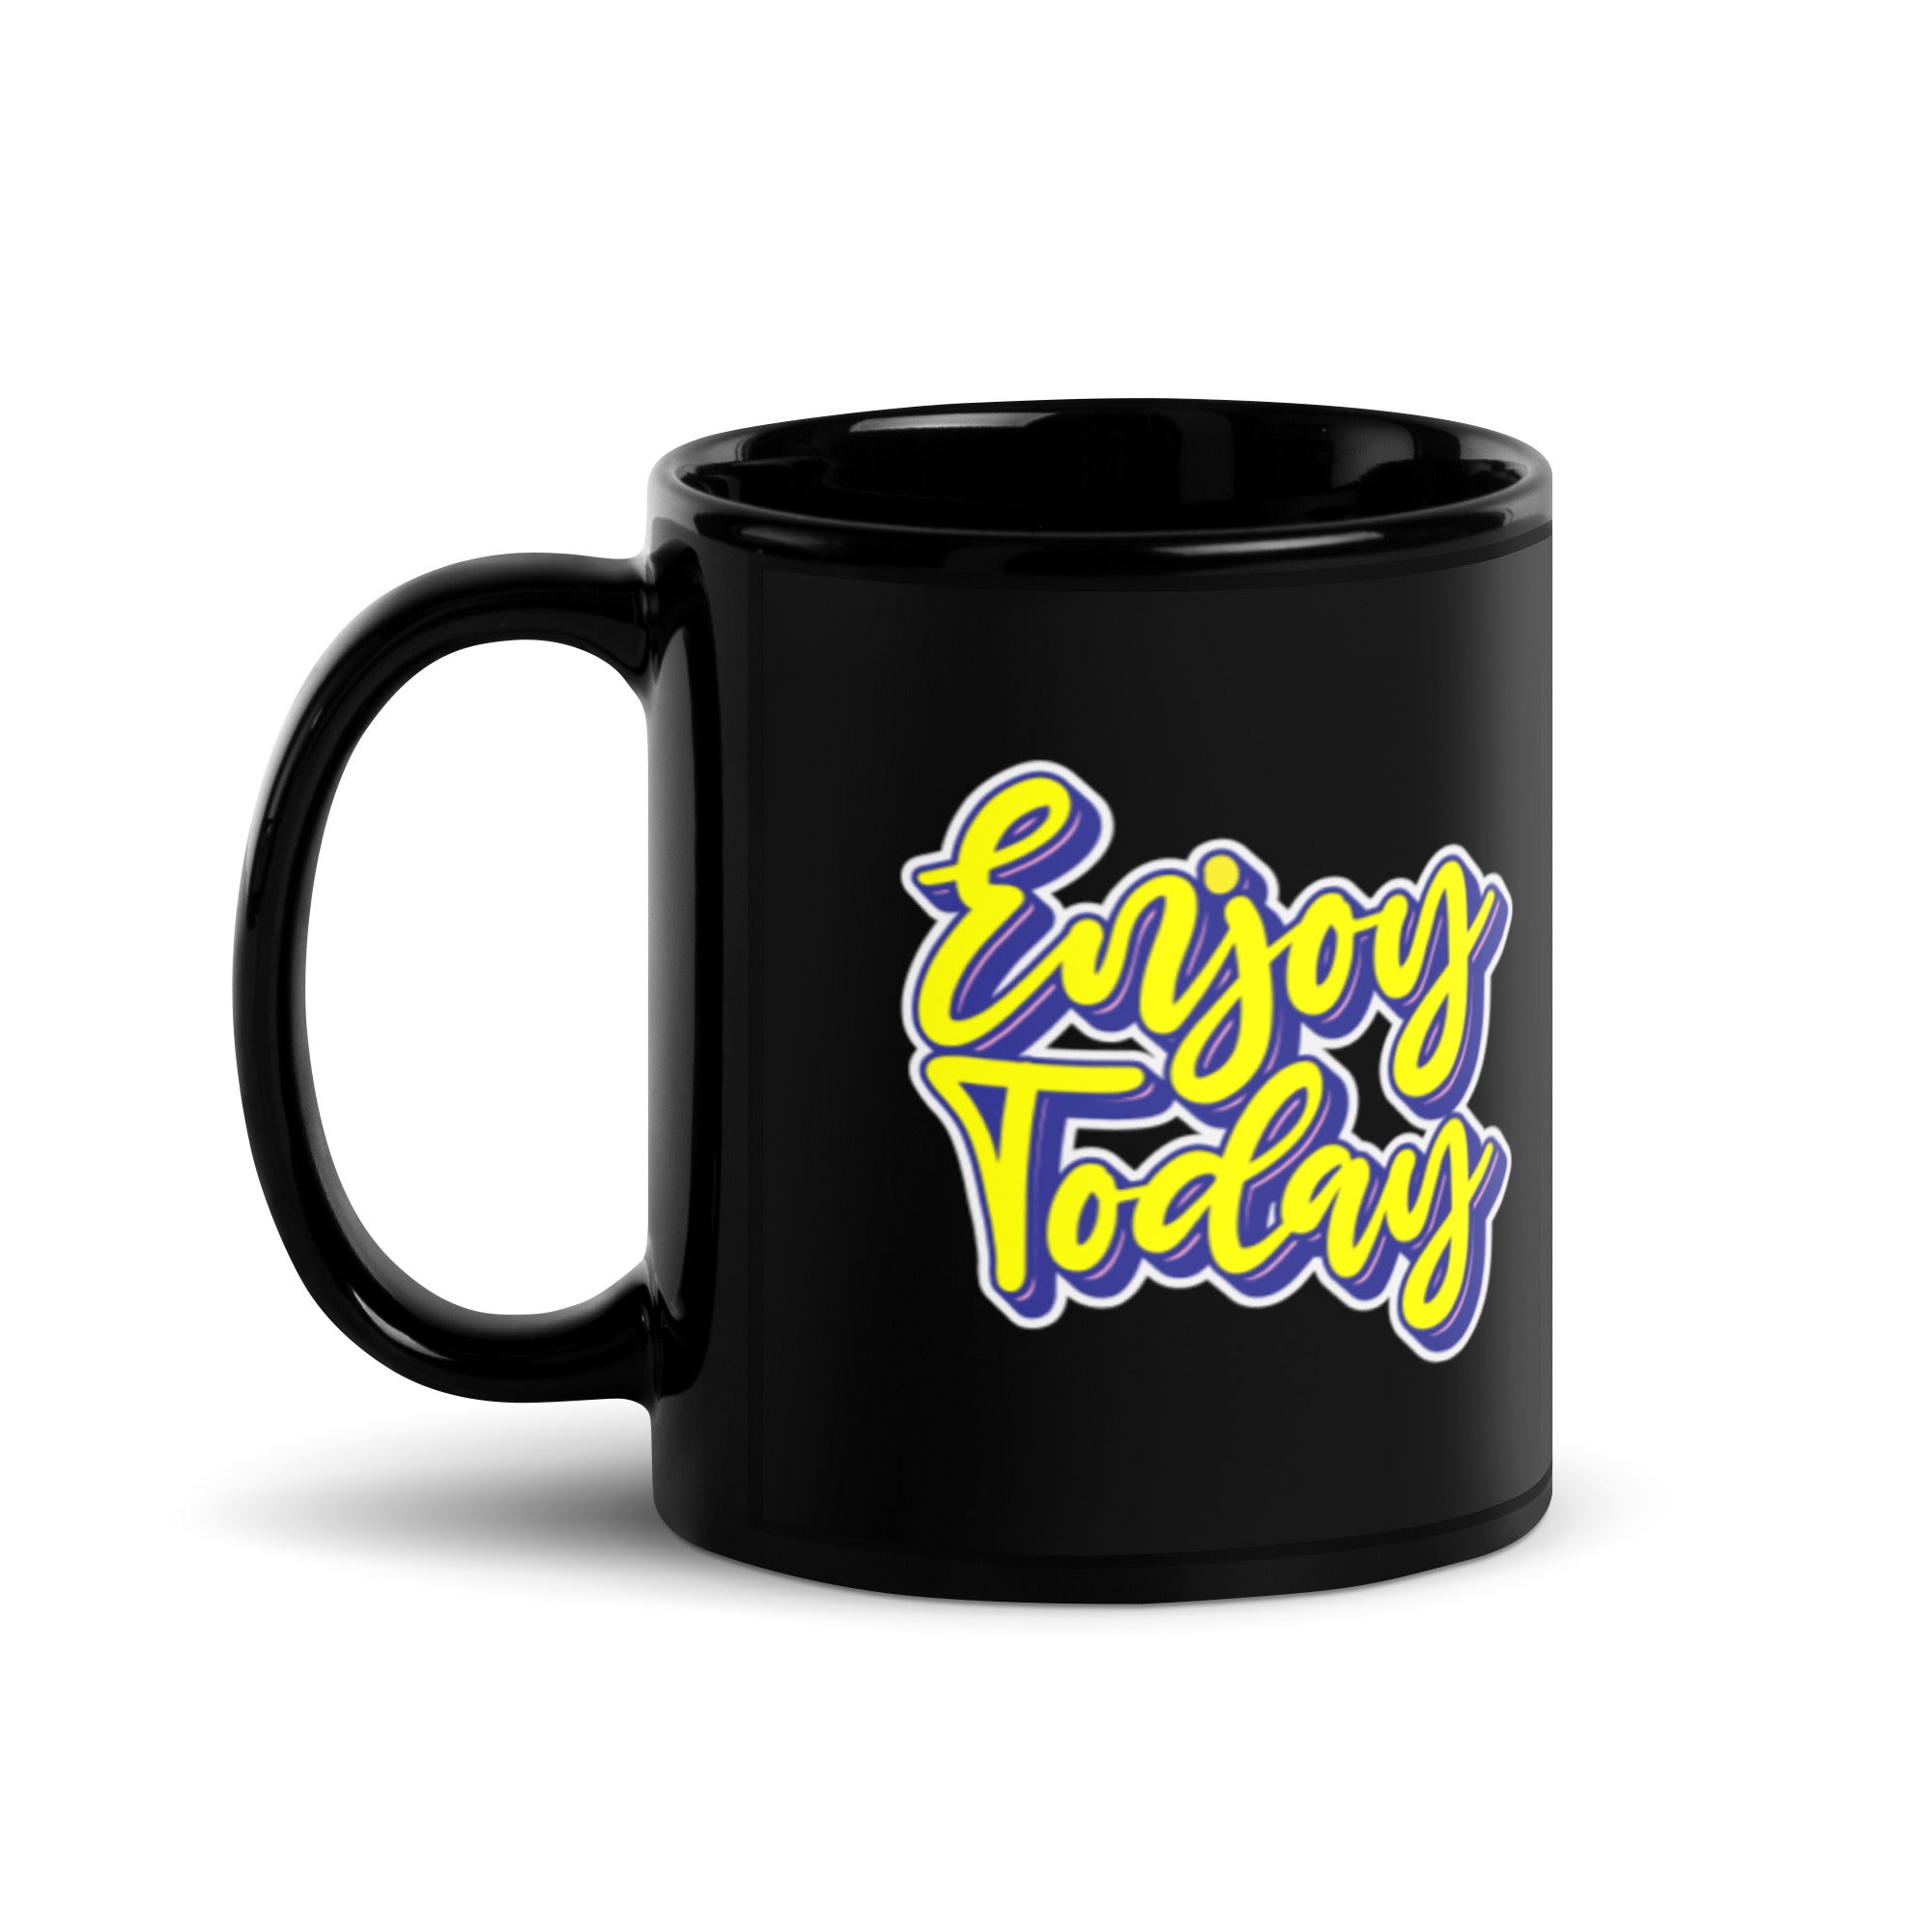 Enjoy Today - Black Glossy Mug